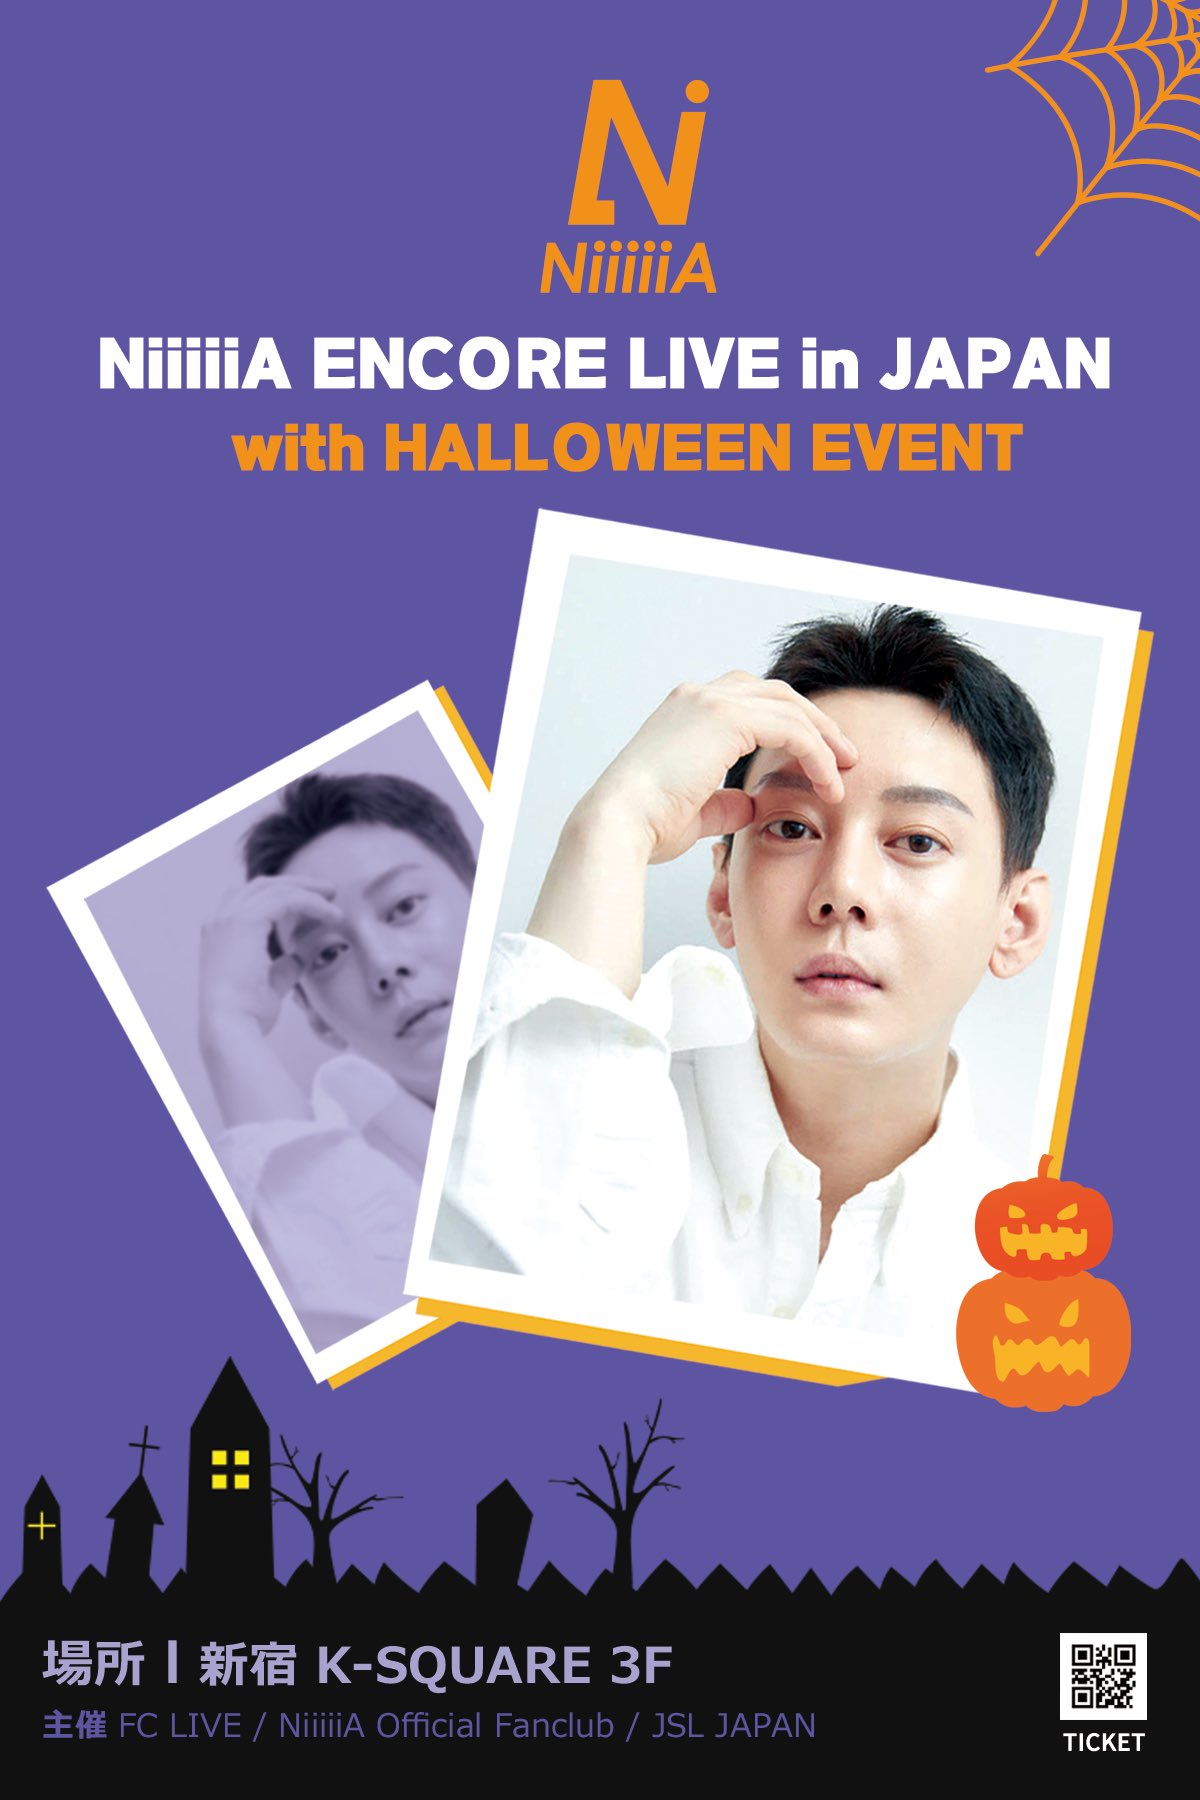 NiiiiiA ENCORE LIVE in JAPAN with HALLOWEEN EVENT